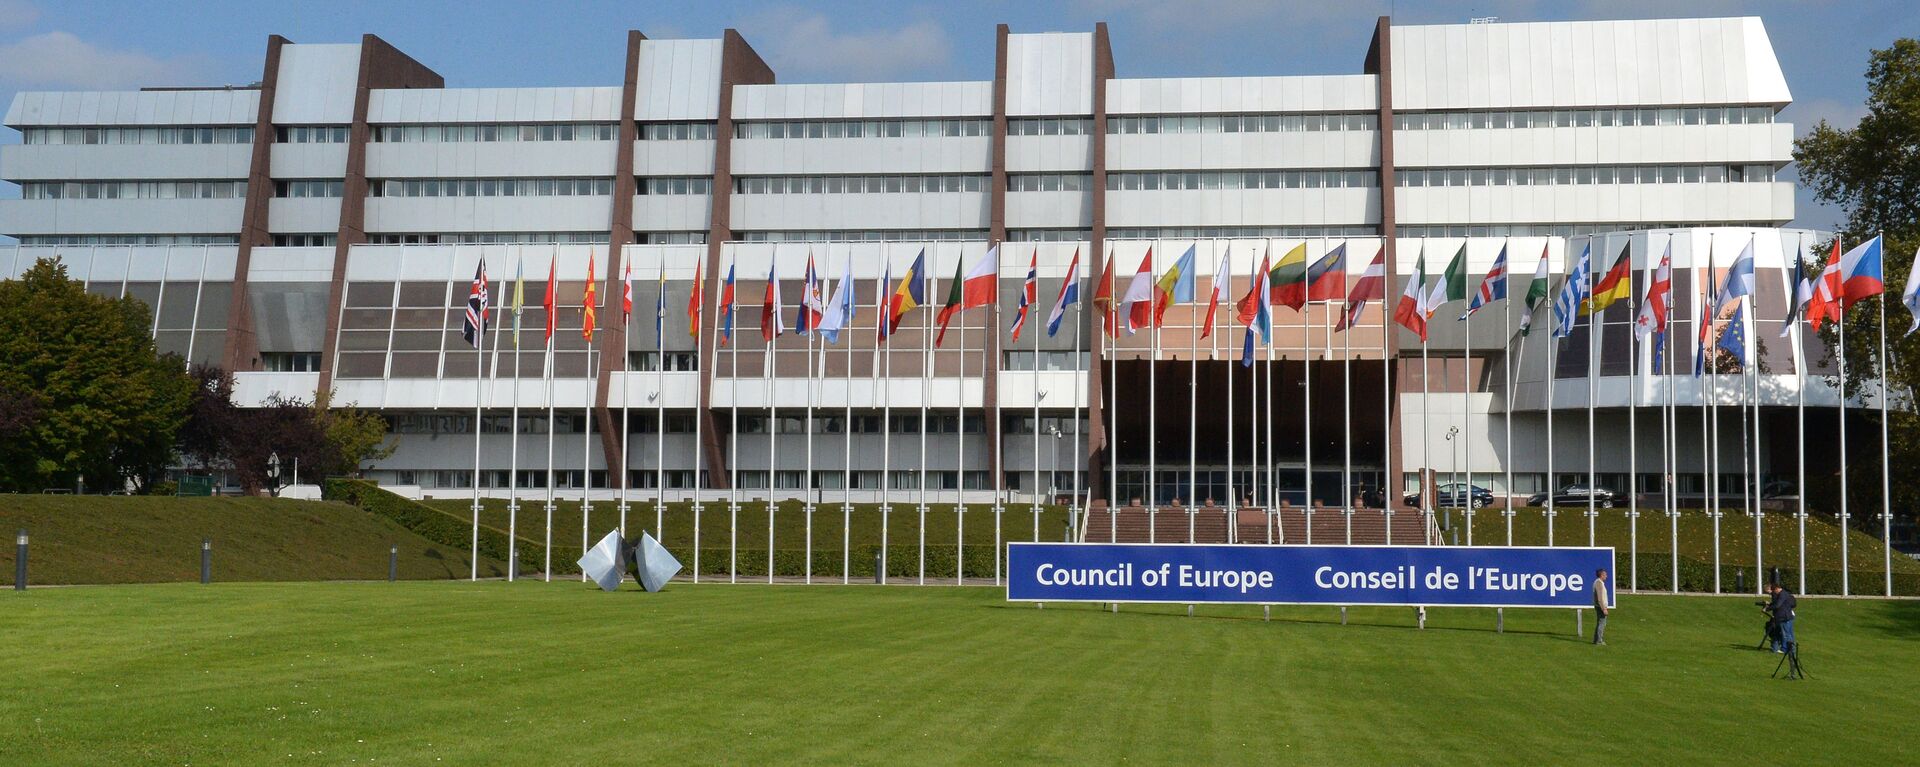 Здание Совета Европы в Страсбурге, архивное фото - Sputnik Latvija, 1920, 30.09.2021